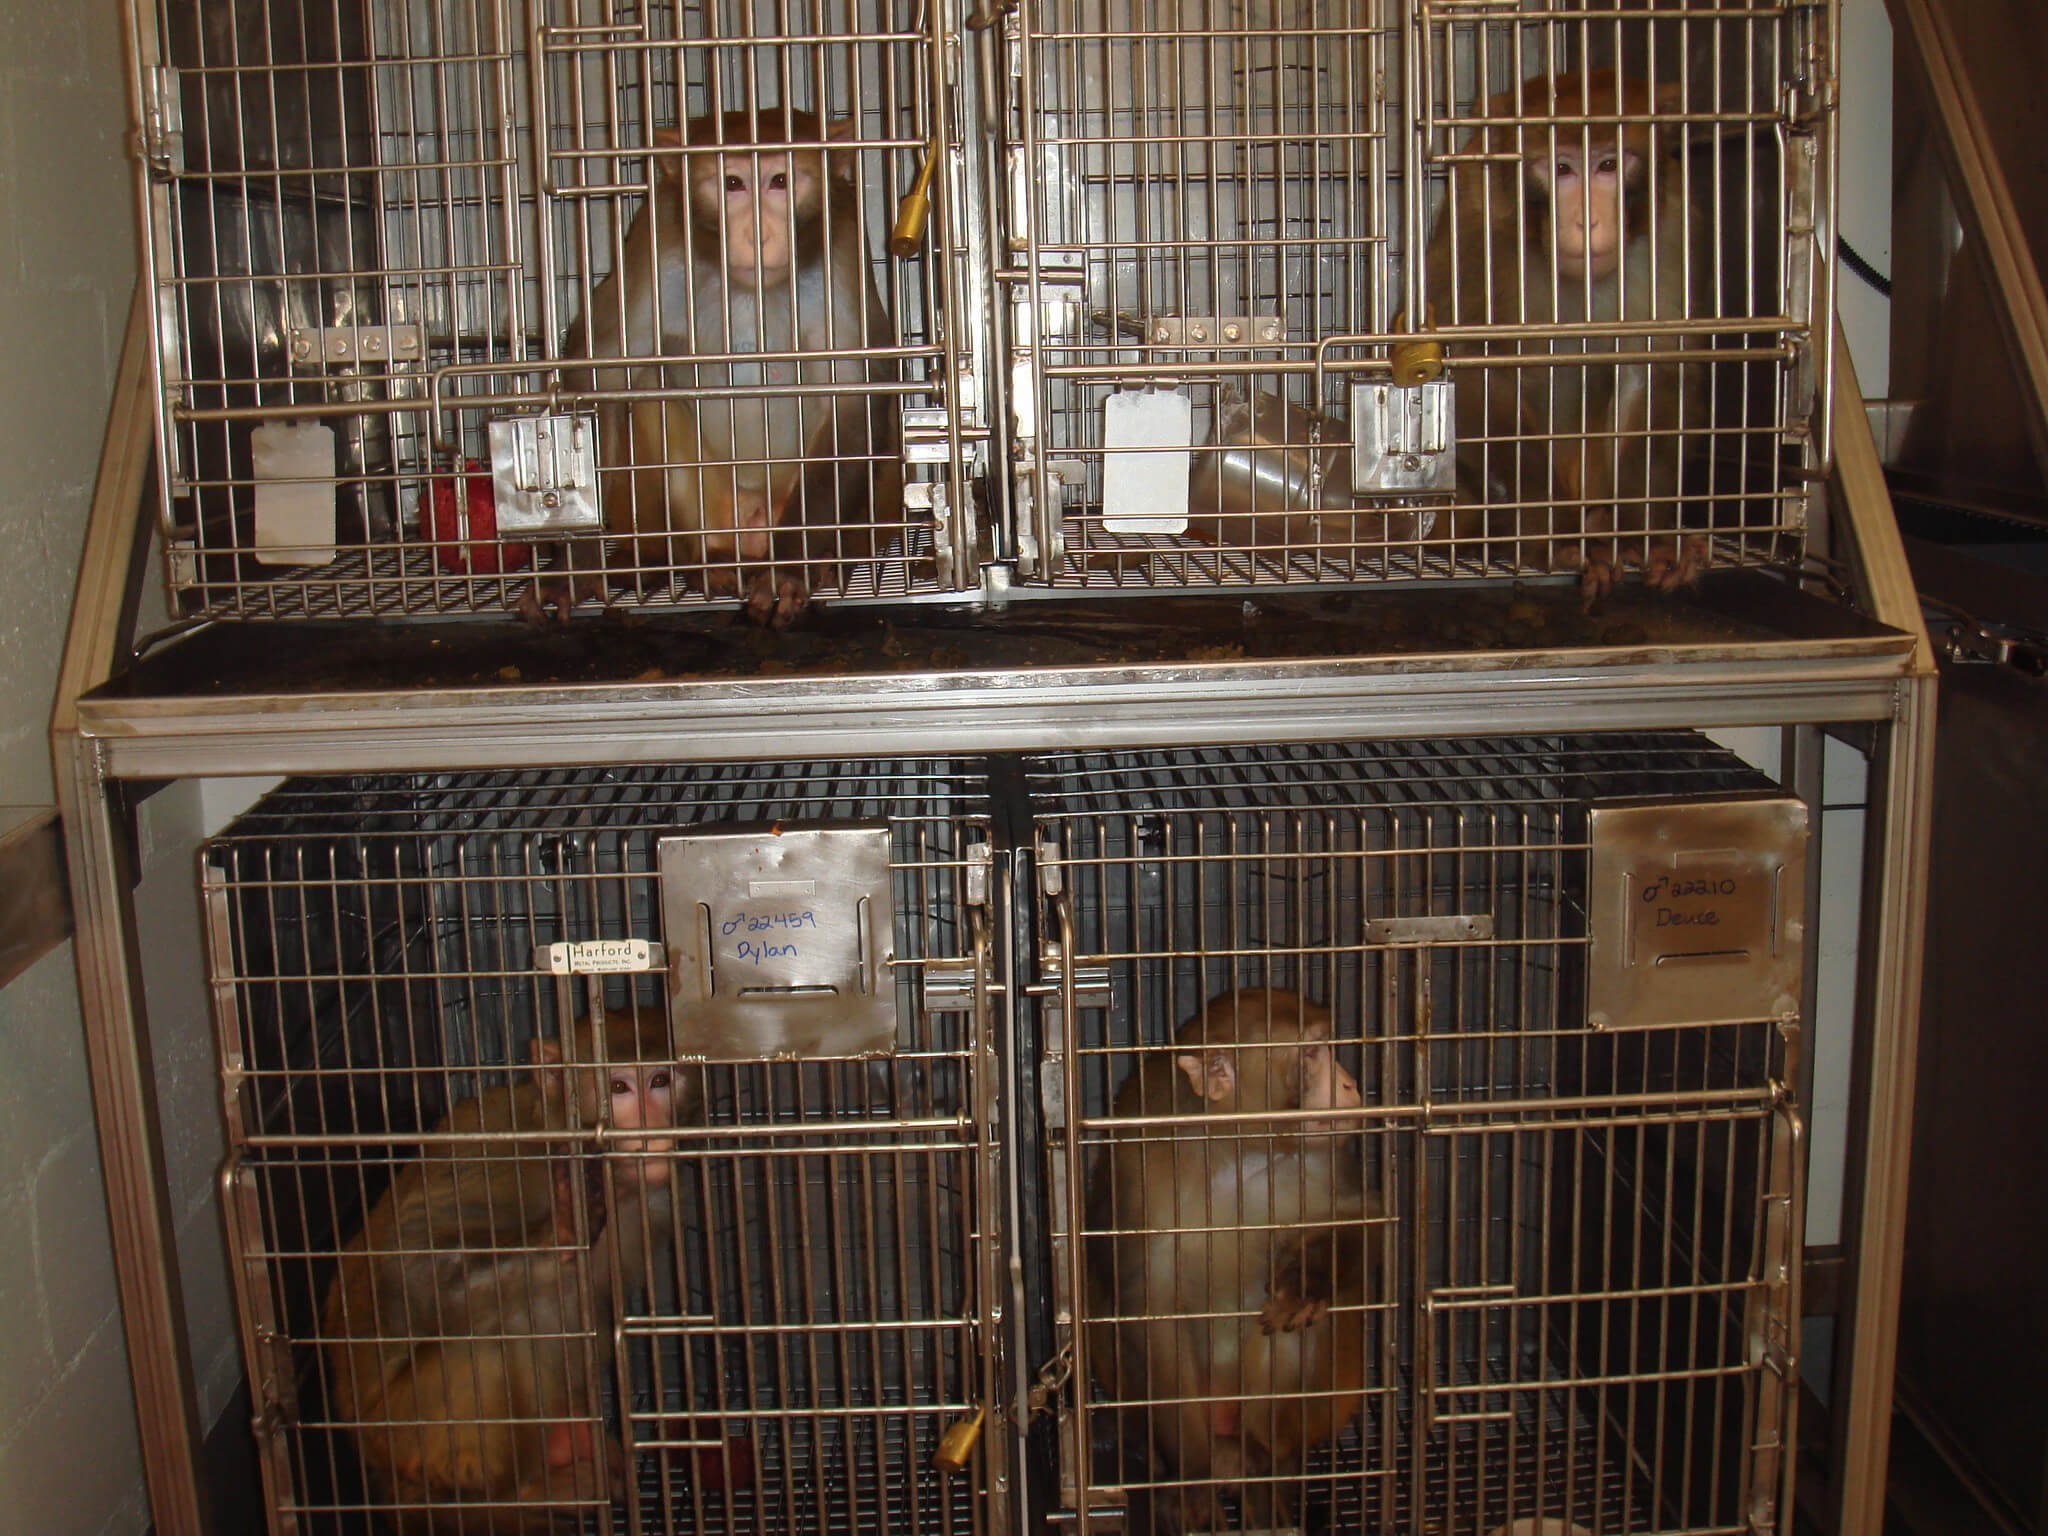 Caged animals. Виварий морские свинки. Виварий для лабораторных животных. Клетки для животных в вивариях.